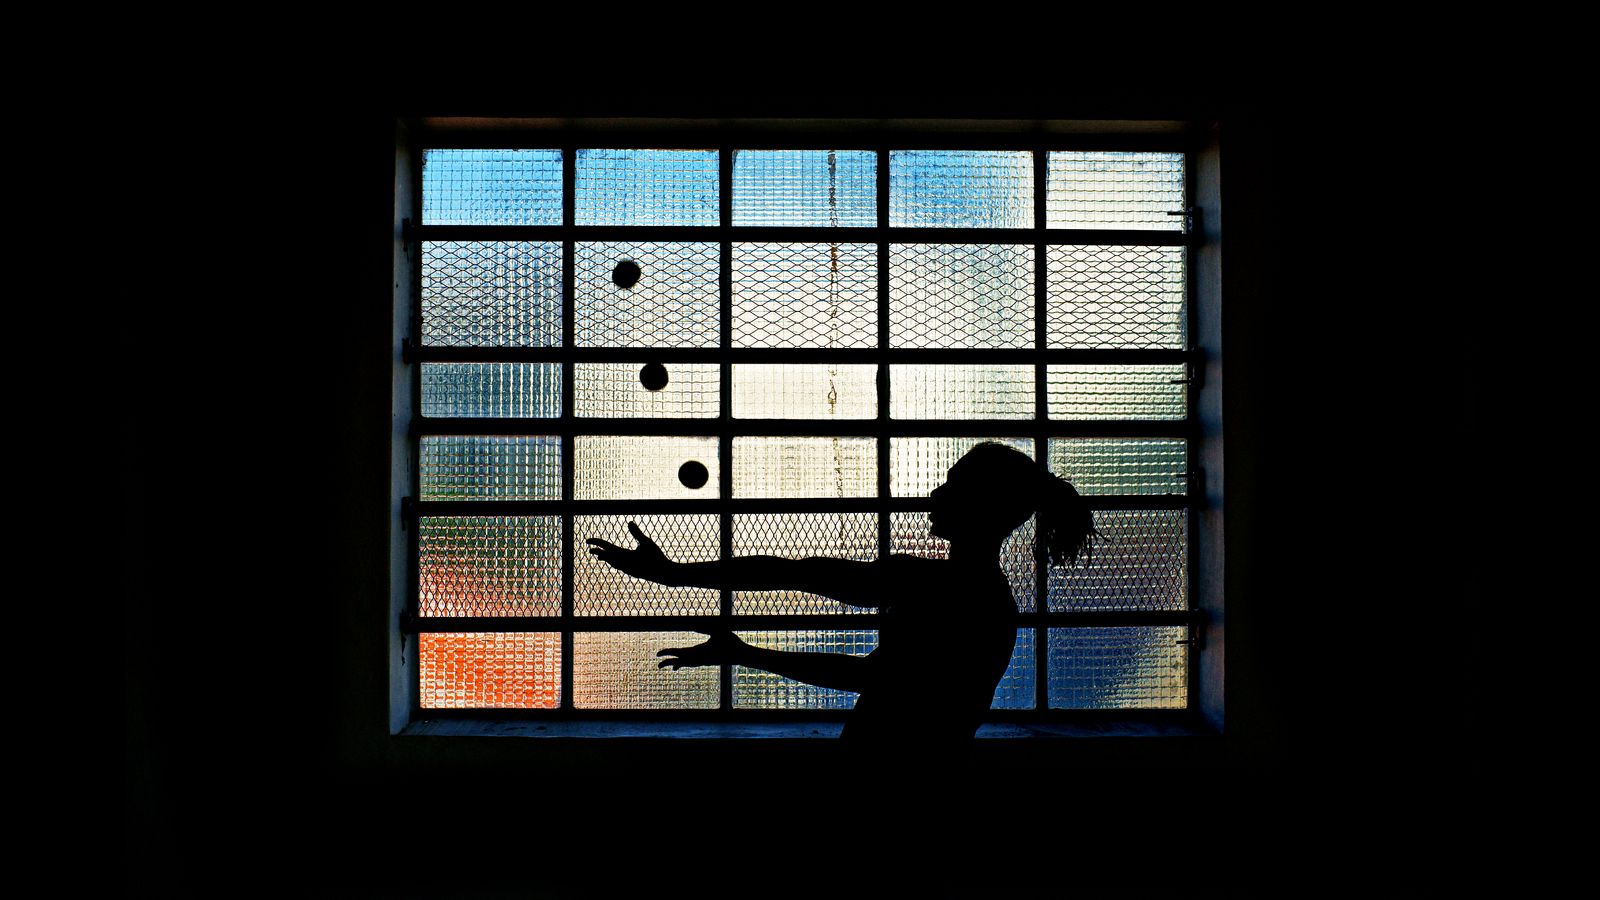 Jean-Souleyman, un jongleur lyonnais, jongle à trois balles devant une fenêtre à carreaux. La photo est prise en contre-jour et chaque balle a son carreau.